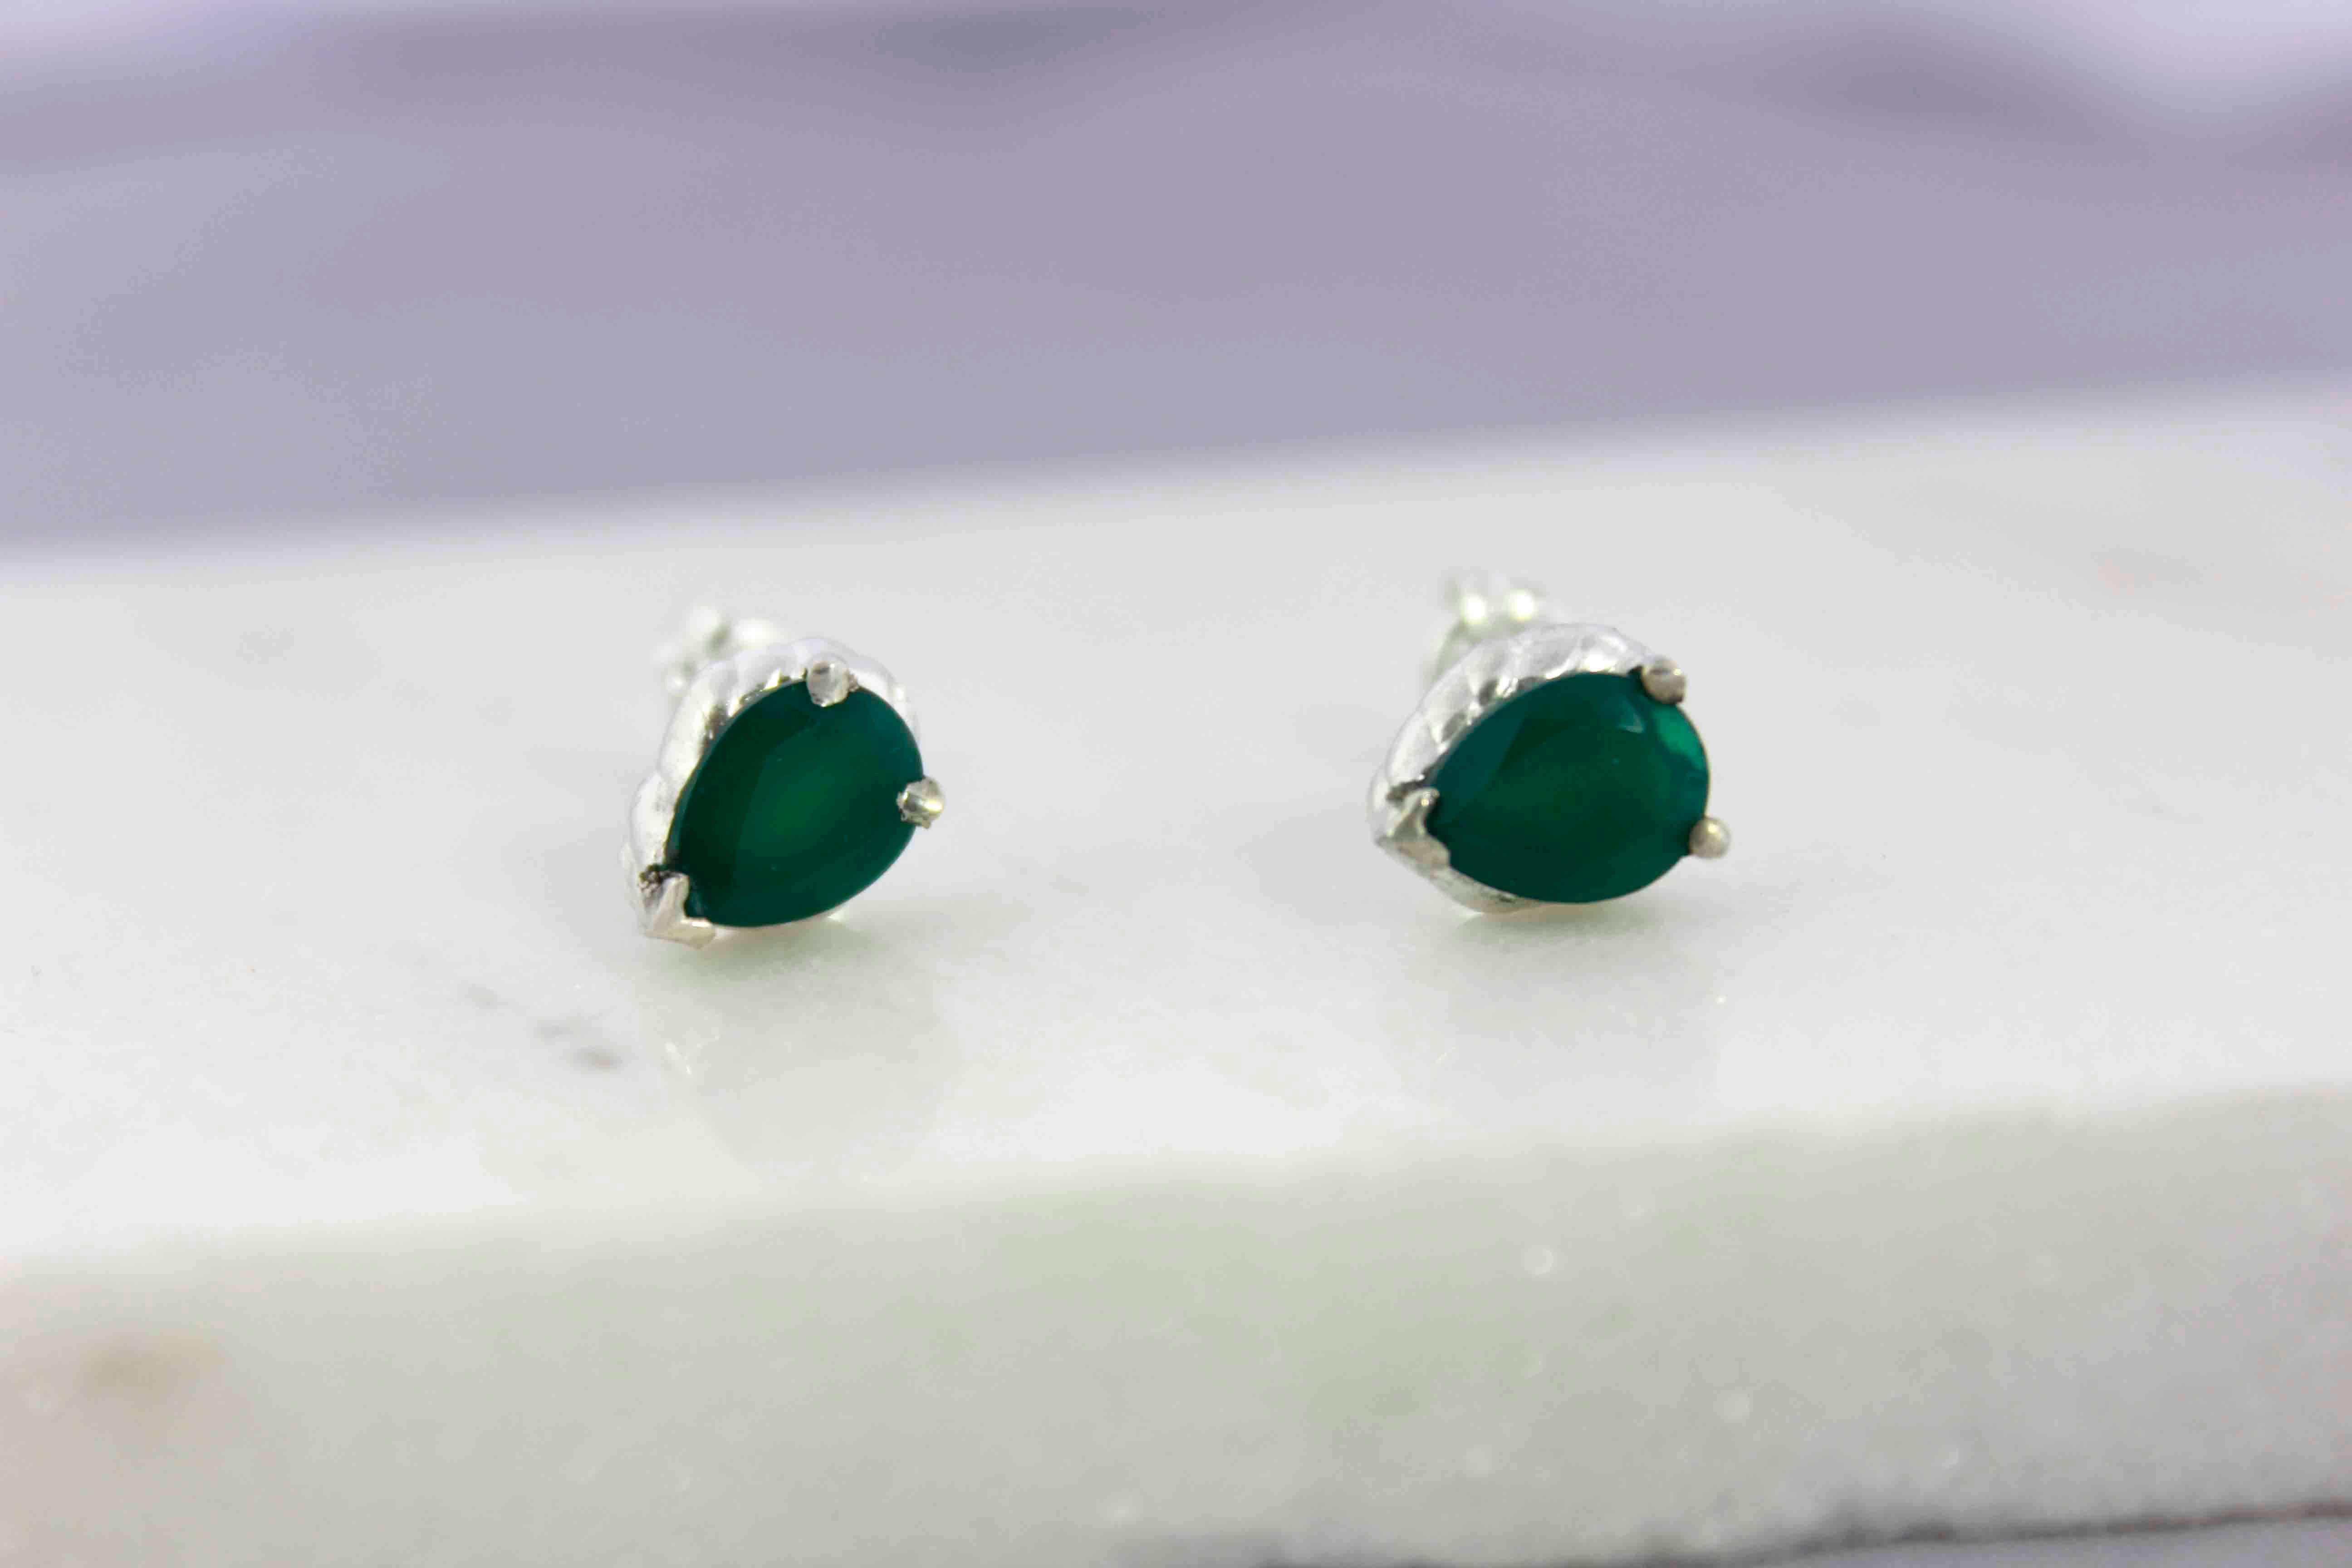 Die Classic Green Agate Earrings sind mit zwei tiefgrünen Achatsteinen besetzt.

Diese zarten Ohrringe haben einen originellen und klassischen Stil, während sie gleichzeitig einen persönlichen Touch haben!

Steingröße 6×8 mm

Für verfügbare Steine